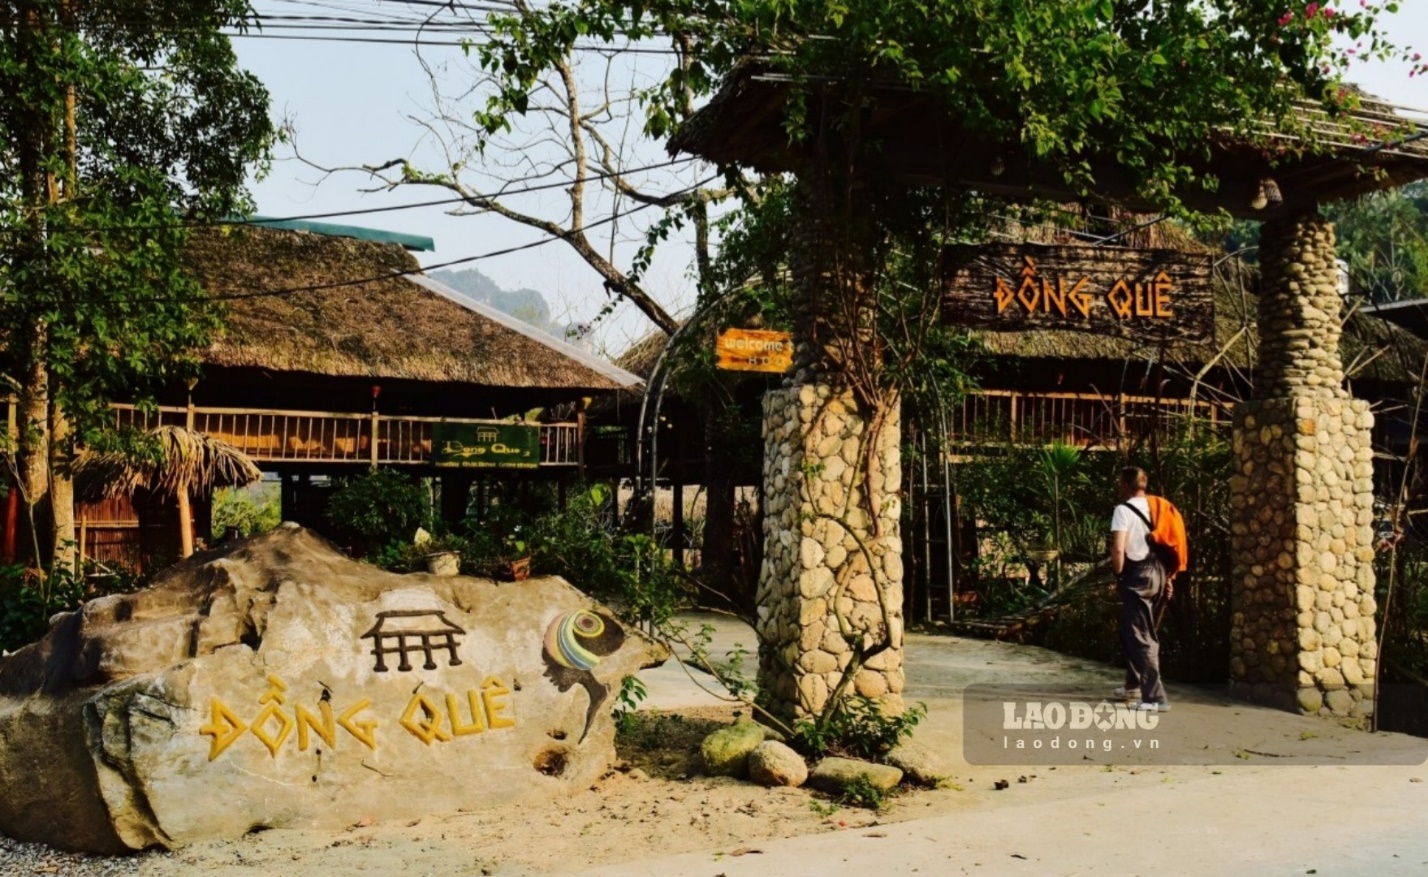 Ghé ngôi làng miền sơn cước, khám phá văn hóa Tày ở Hà Giang - 3